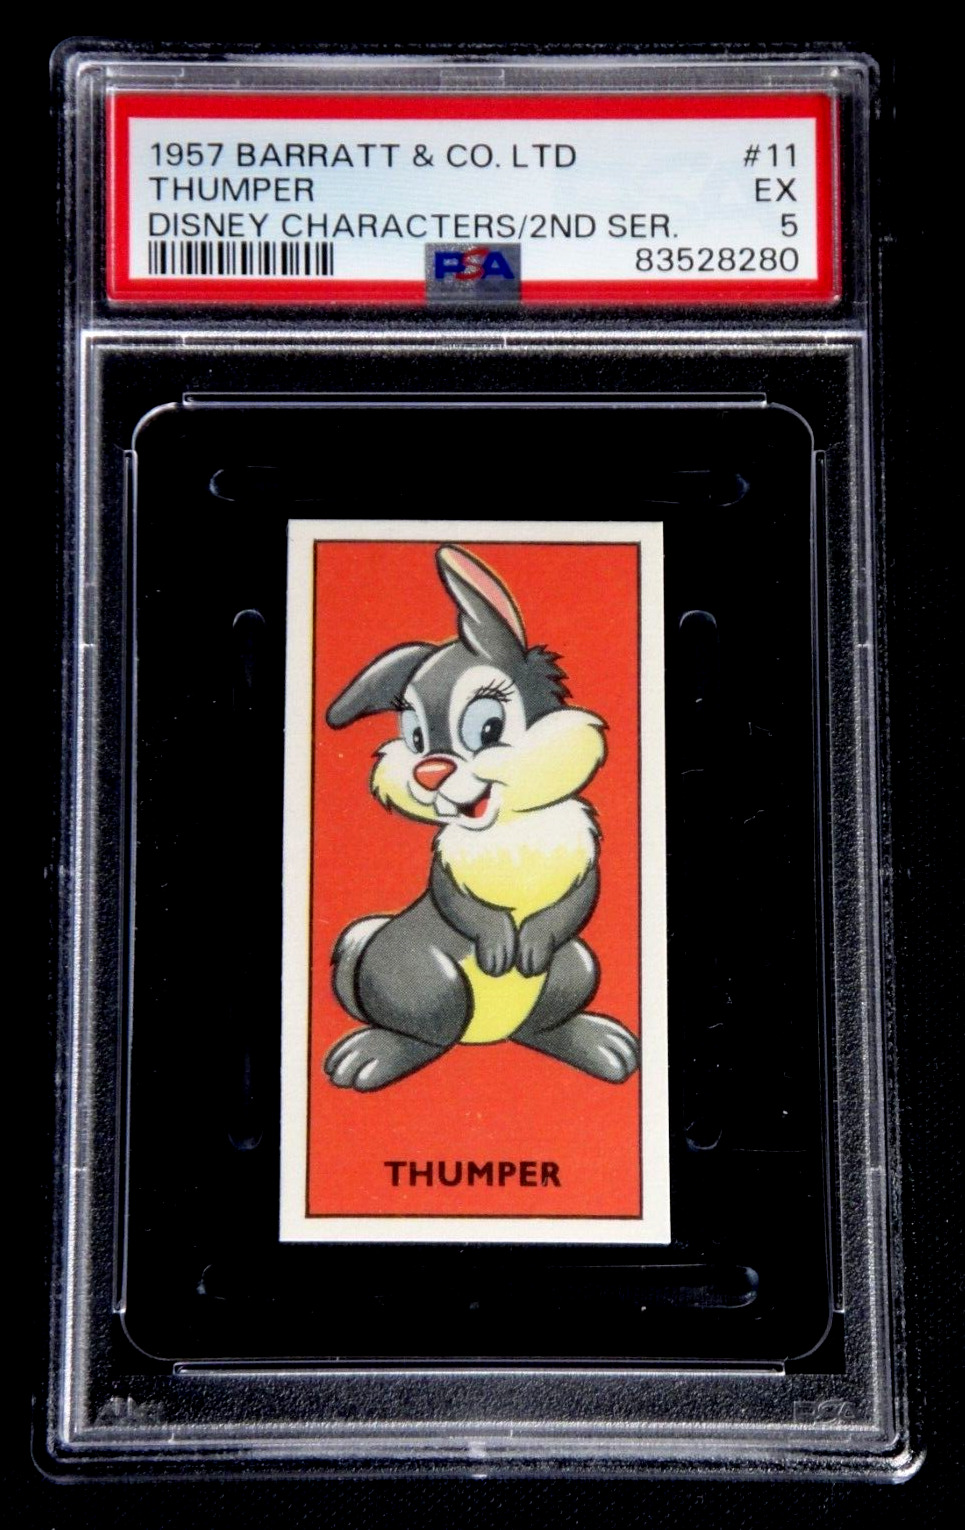 1957 BARRATT & CO LTD. WALT DISNEY CHARACTERS THUMPER #11 PSA 5 EX RARE CARD